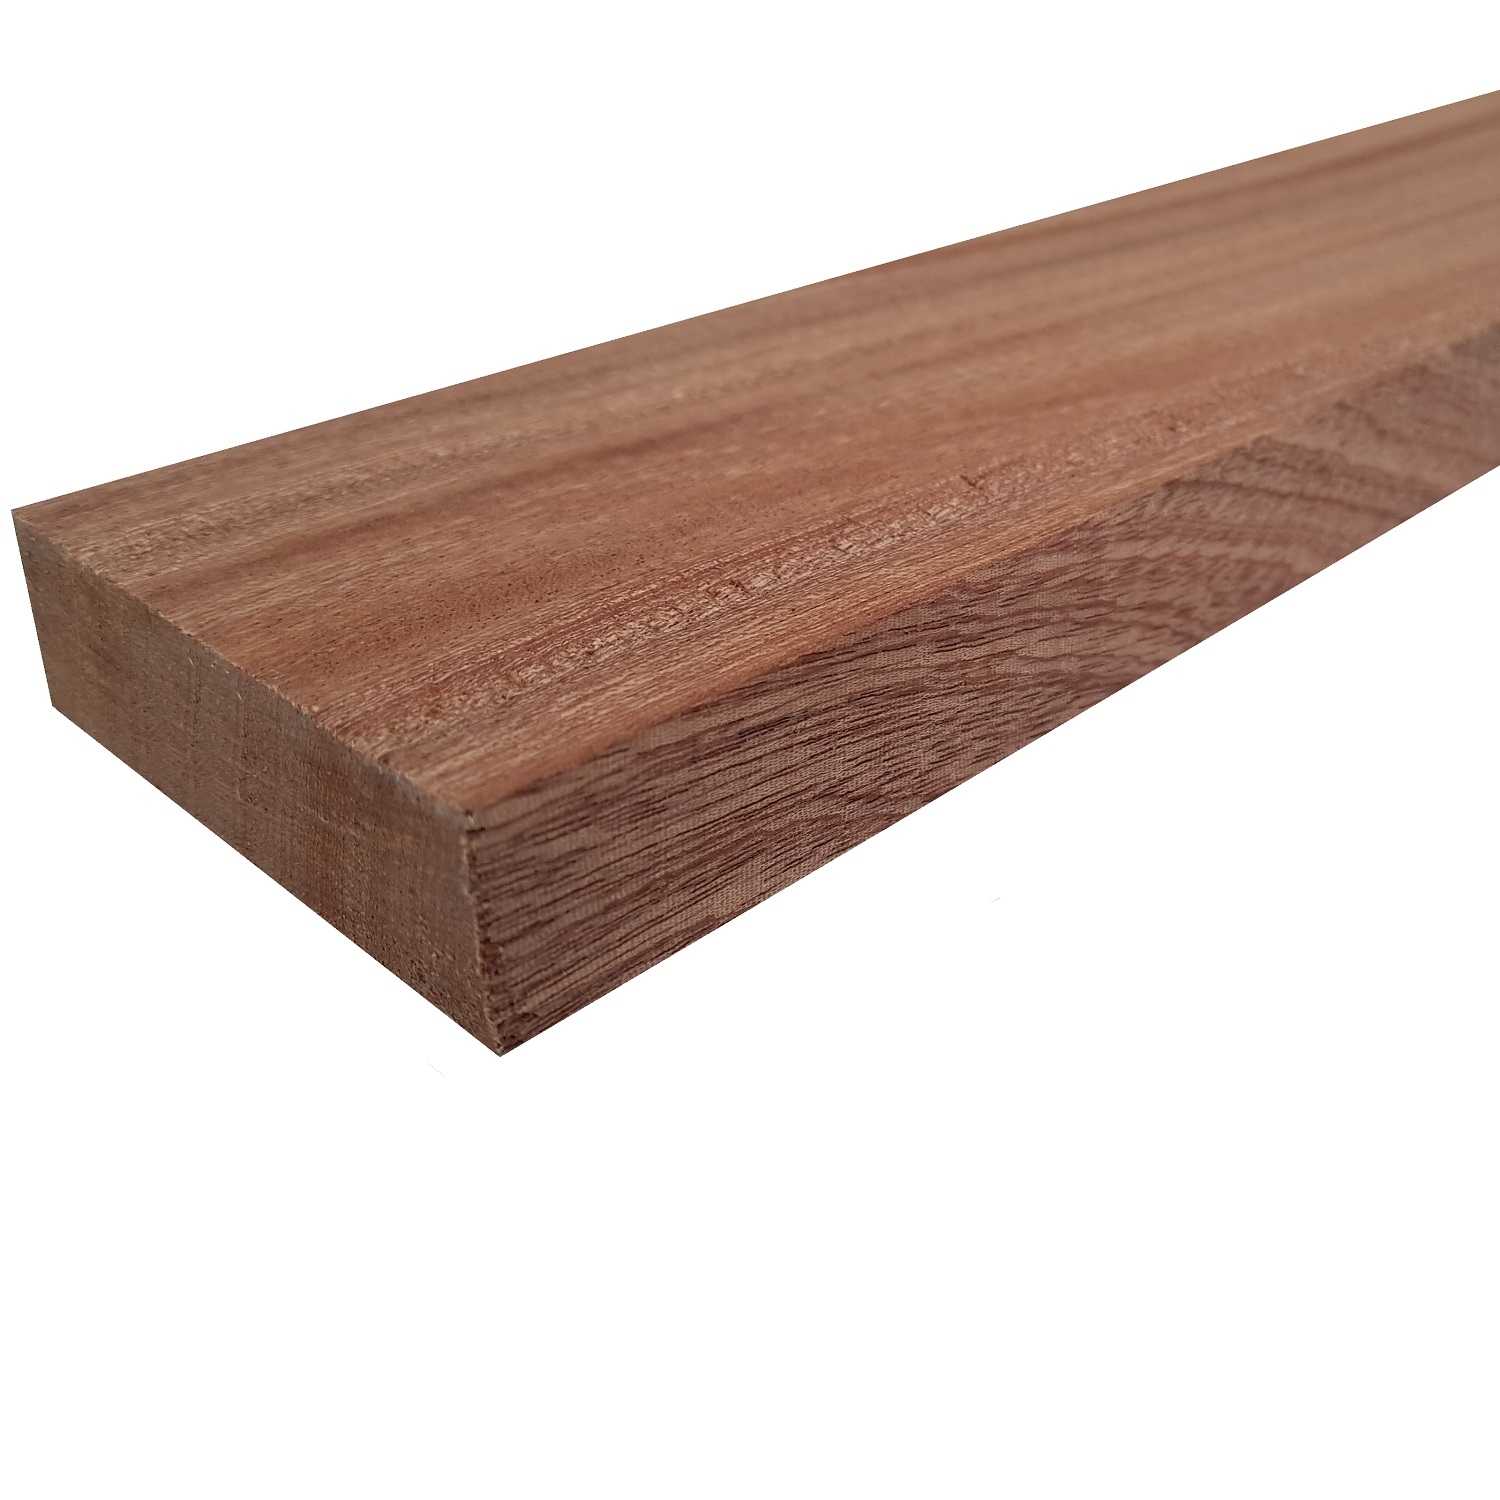 Tavola legno di Mogano Refilato Piallato mm 21 x 160 x 1250 Sipo